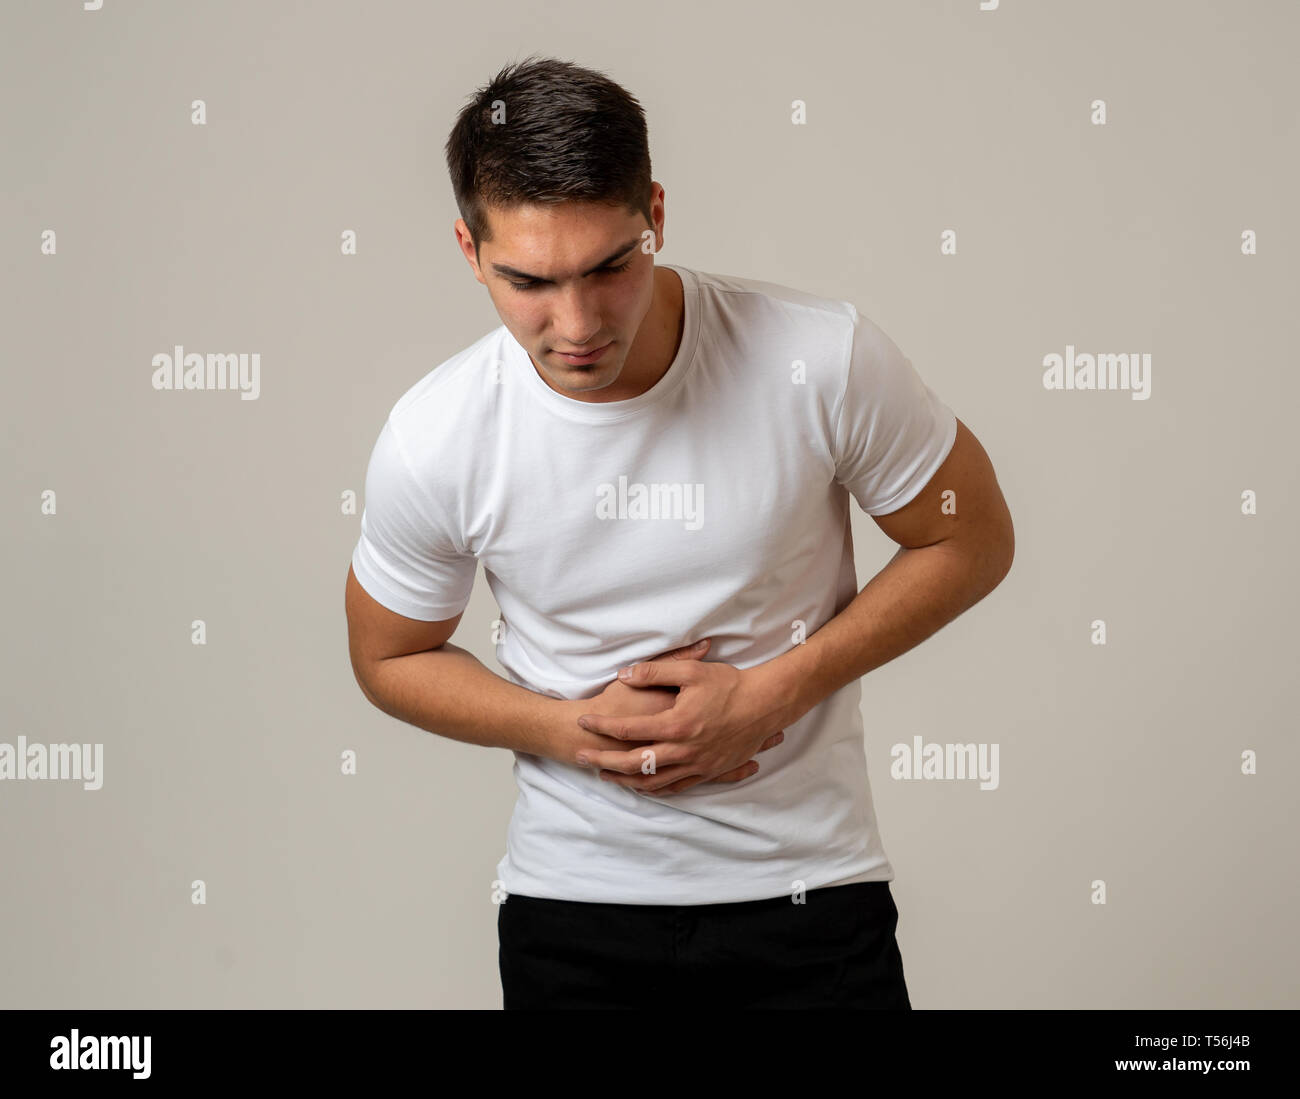 Fitness muscular joven hombre sujetando su estómago sufriendo fuertes dolores abdominales. Aislado sobre fondo neutro. En dolor de estómago, problemas digestivos y Foto de stock